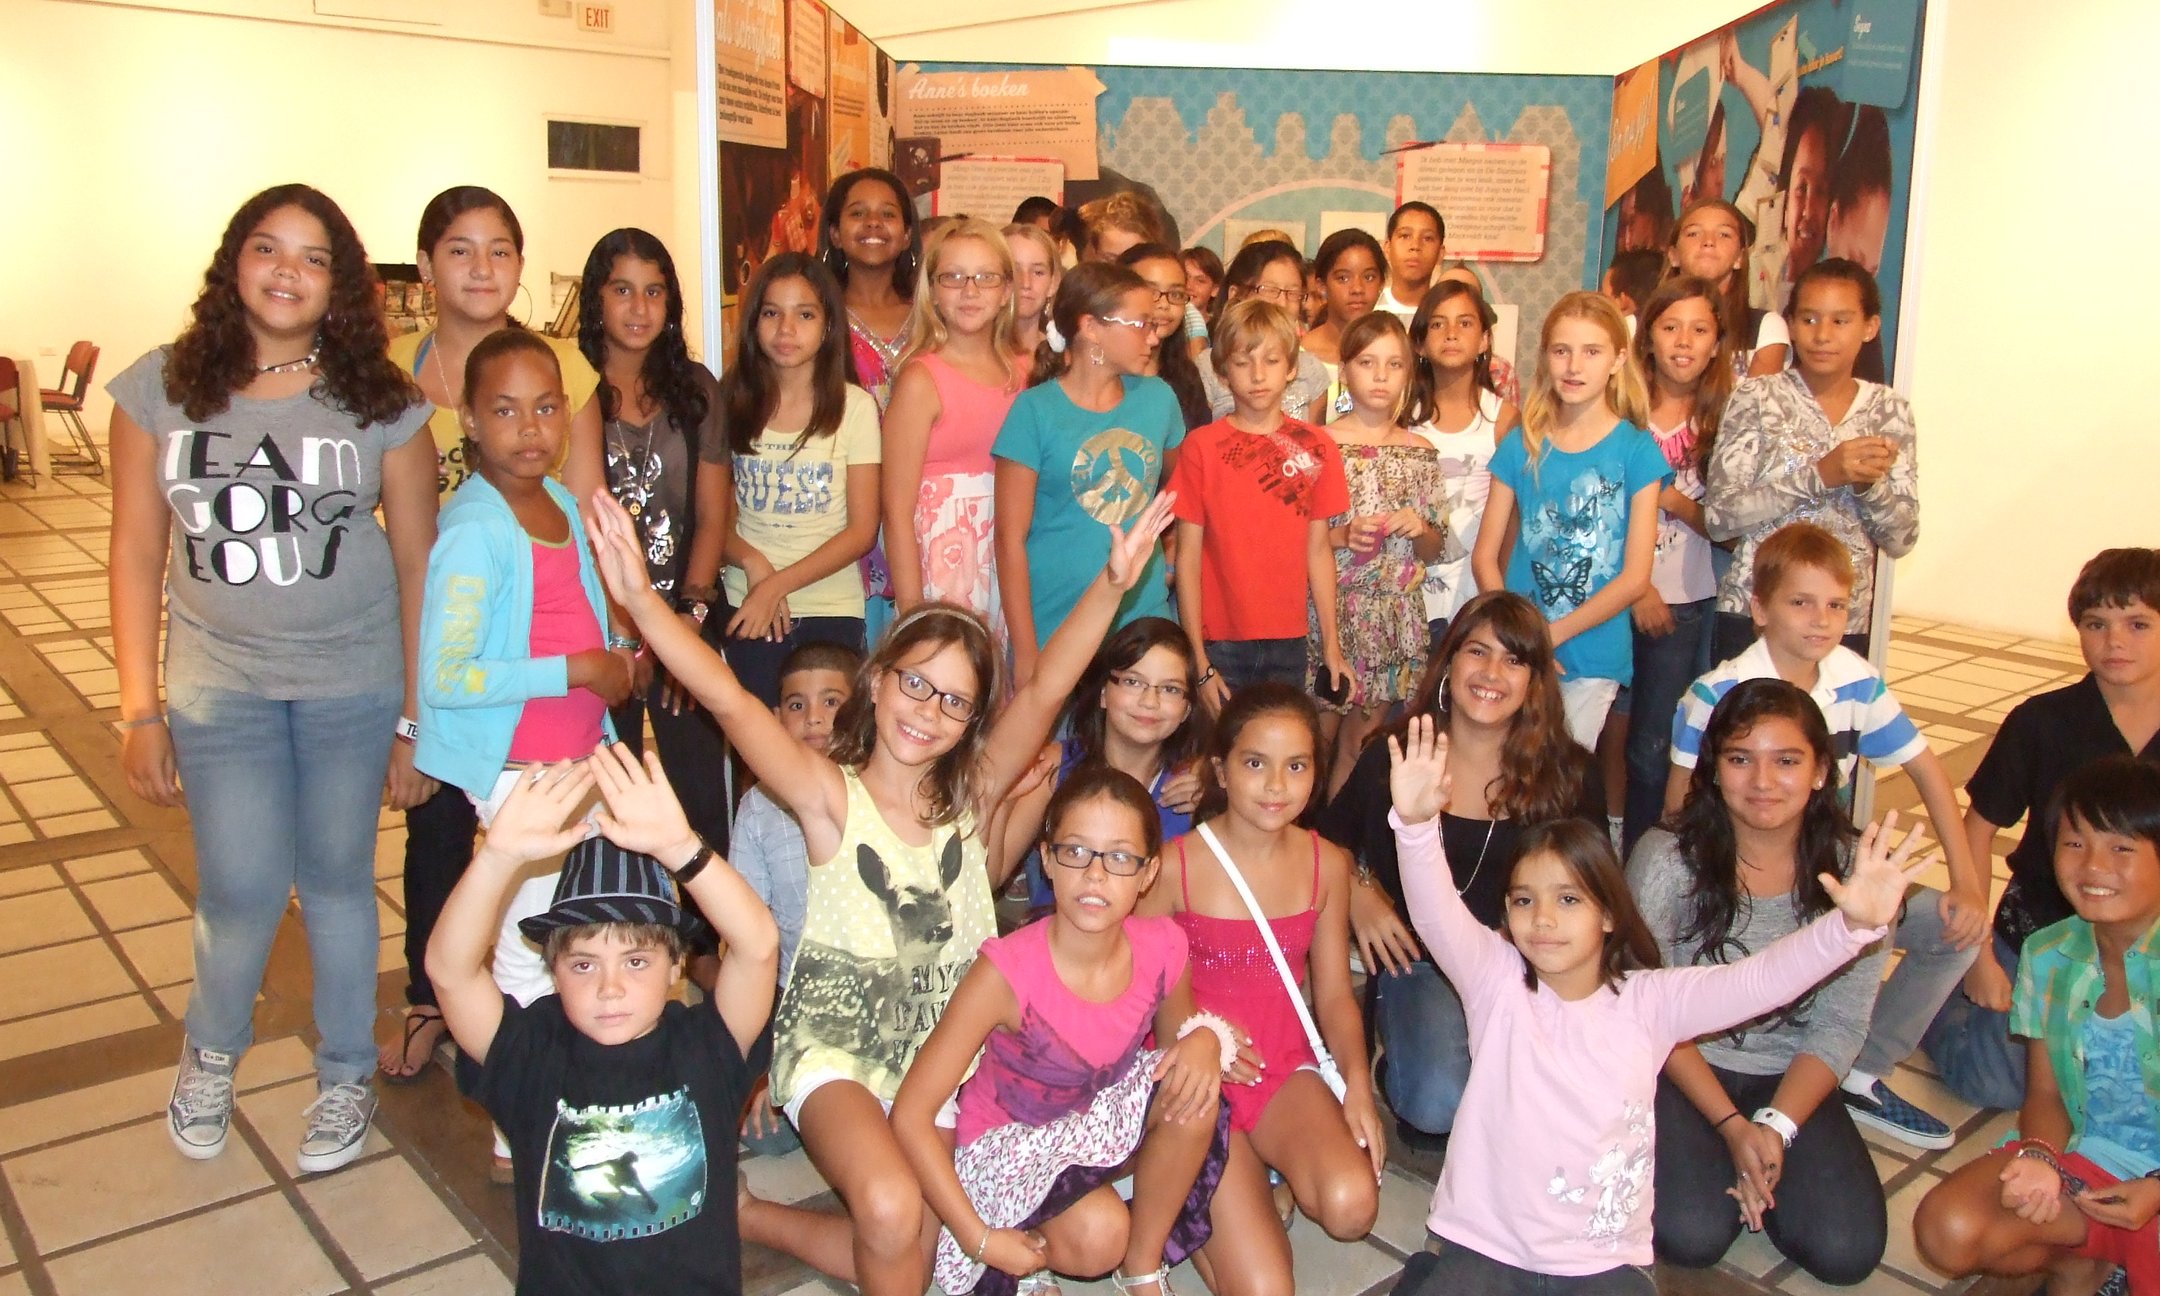 Students of the Mon Cheri school at opening of the exhibition in Cas di Cultura Oranjestad, Aruba (2011)